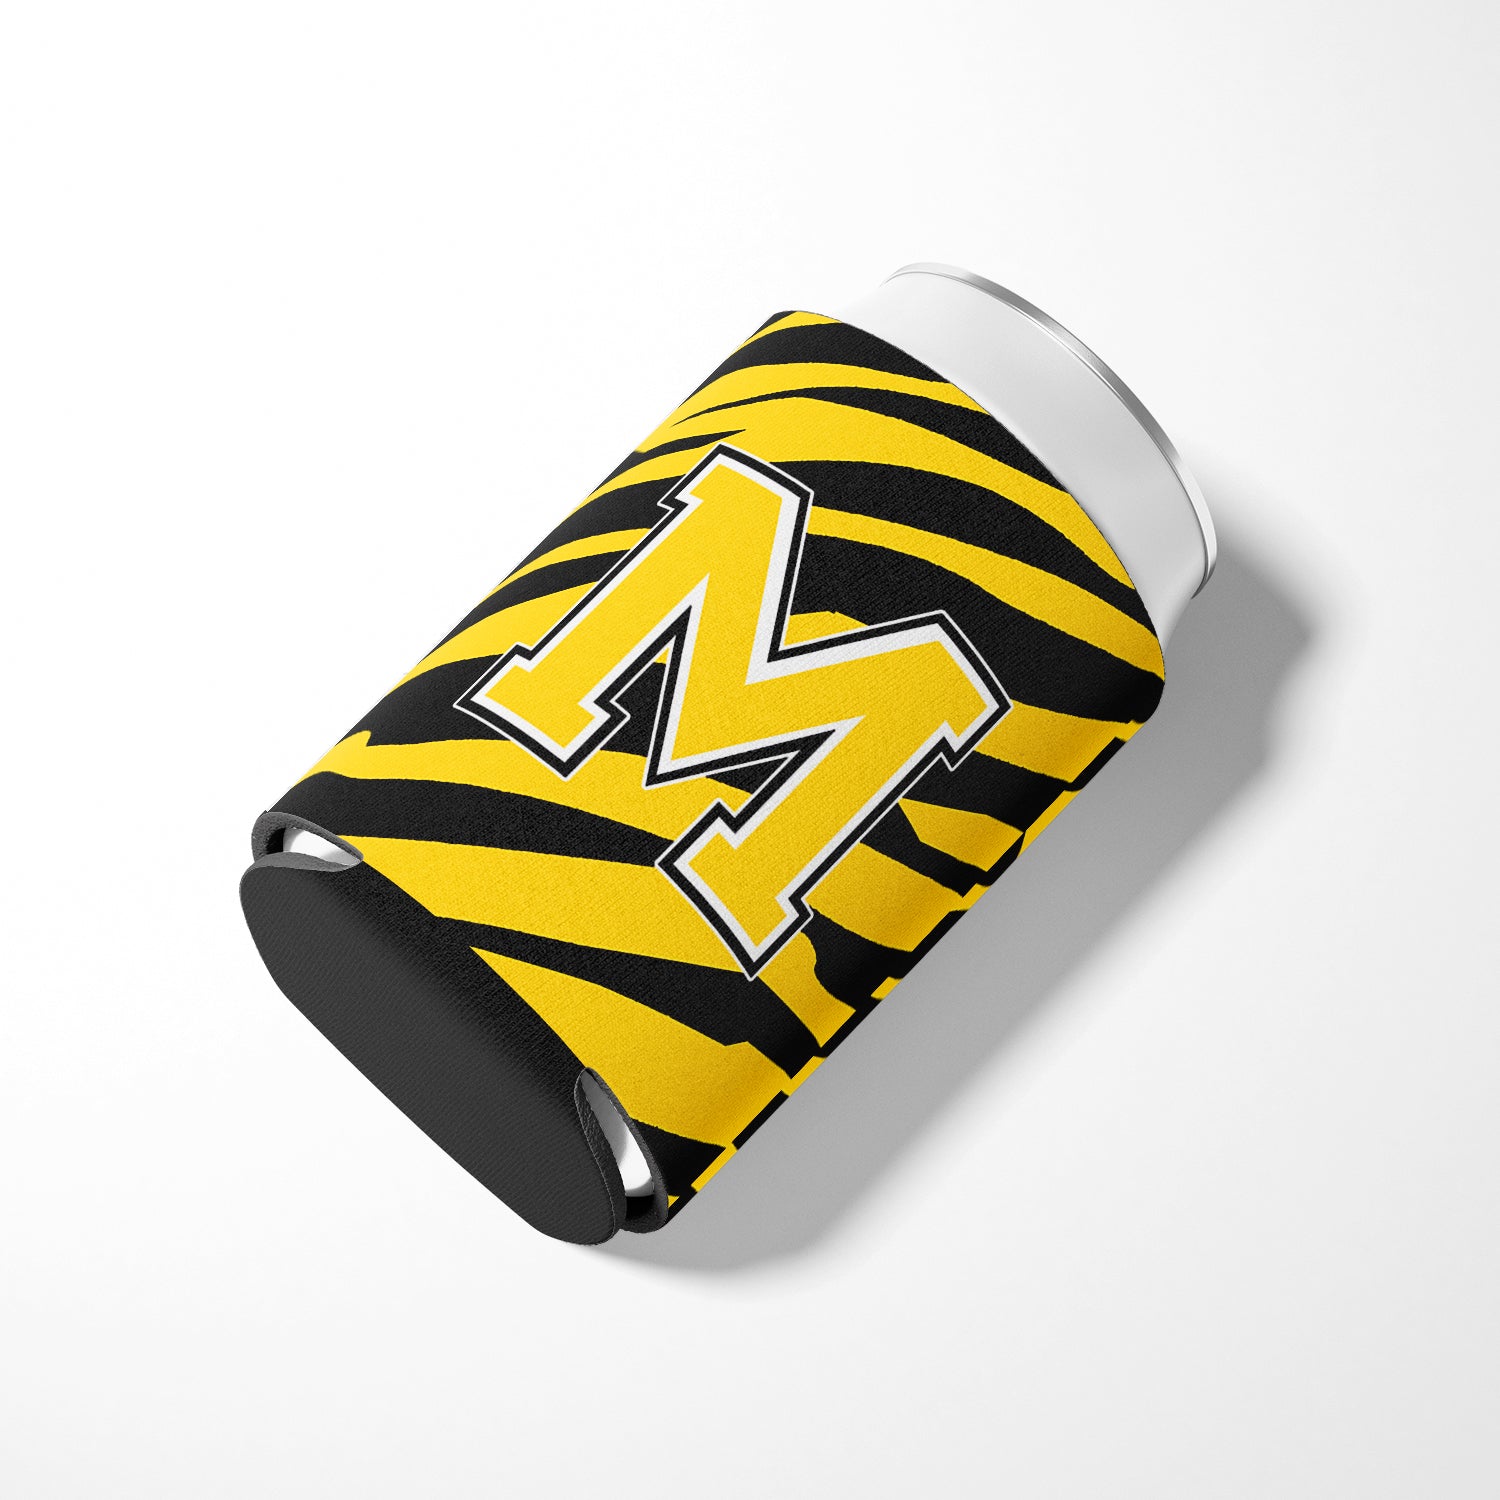 Letter M Initial Monogram - Tiger Stripe - Black Gold Can Beverage Insulator Hugger